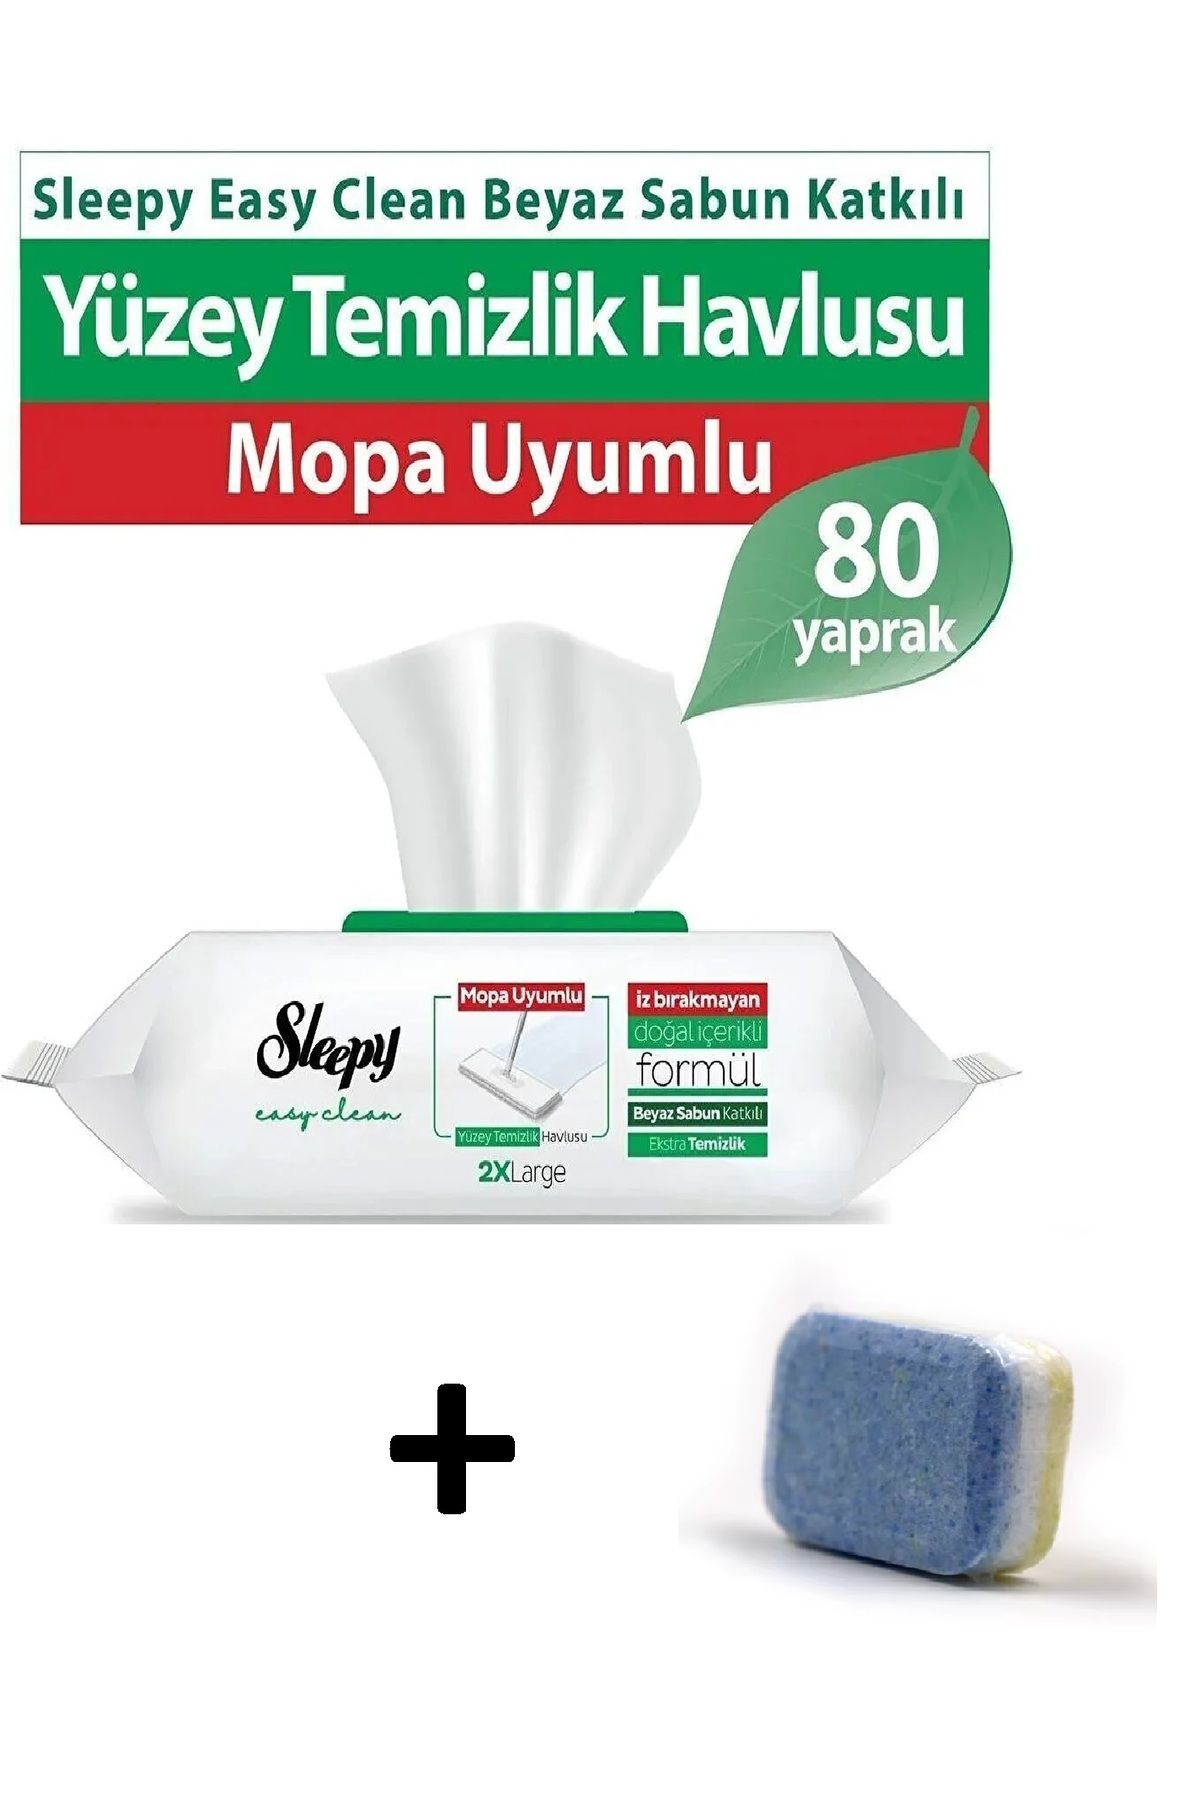 Sleepy Easy Clean Beyaz Sabun Katkılı Mopa Uyumlu Yer Havlusu 80 Yaprak Ilbays 1 Adet Bulaşık Tableti